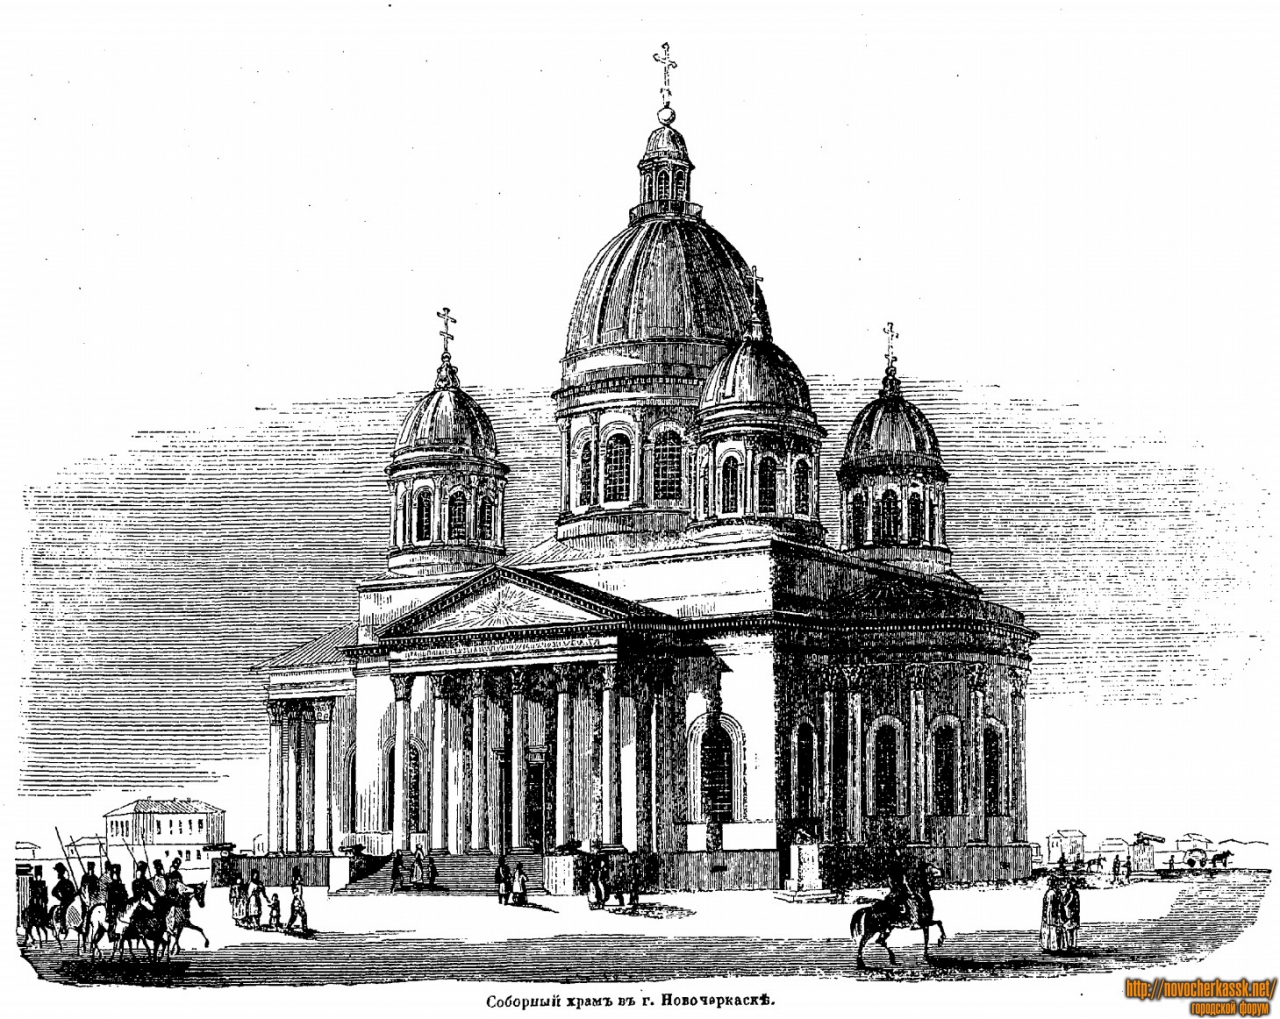 Новочеркасск: Соборный храм в Новочеркасске. Эскиз, опубликован в 1845 году